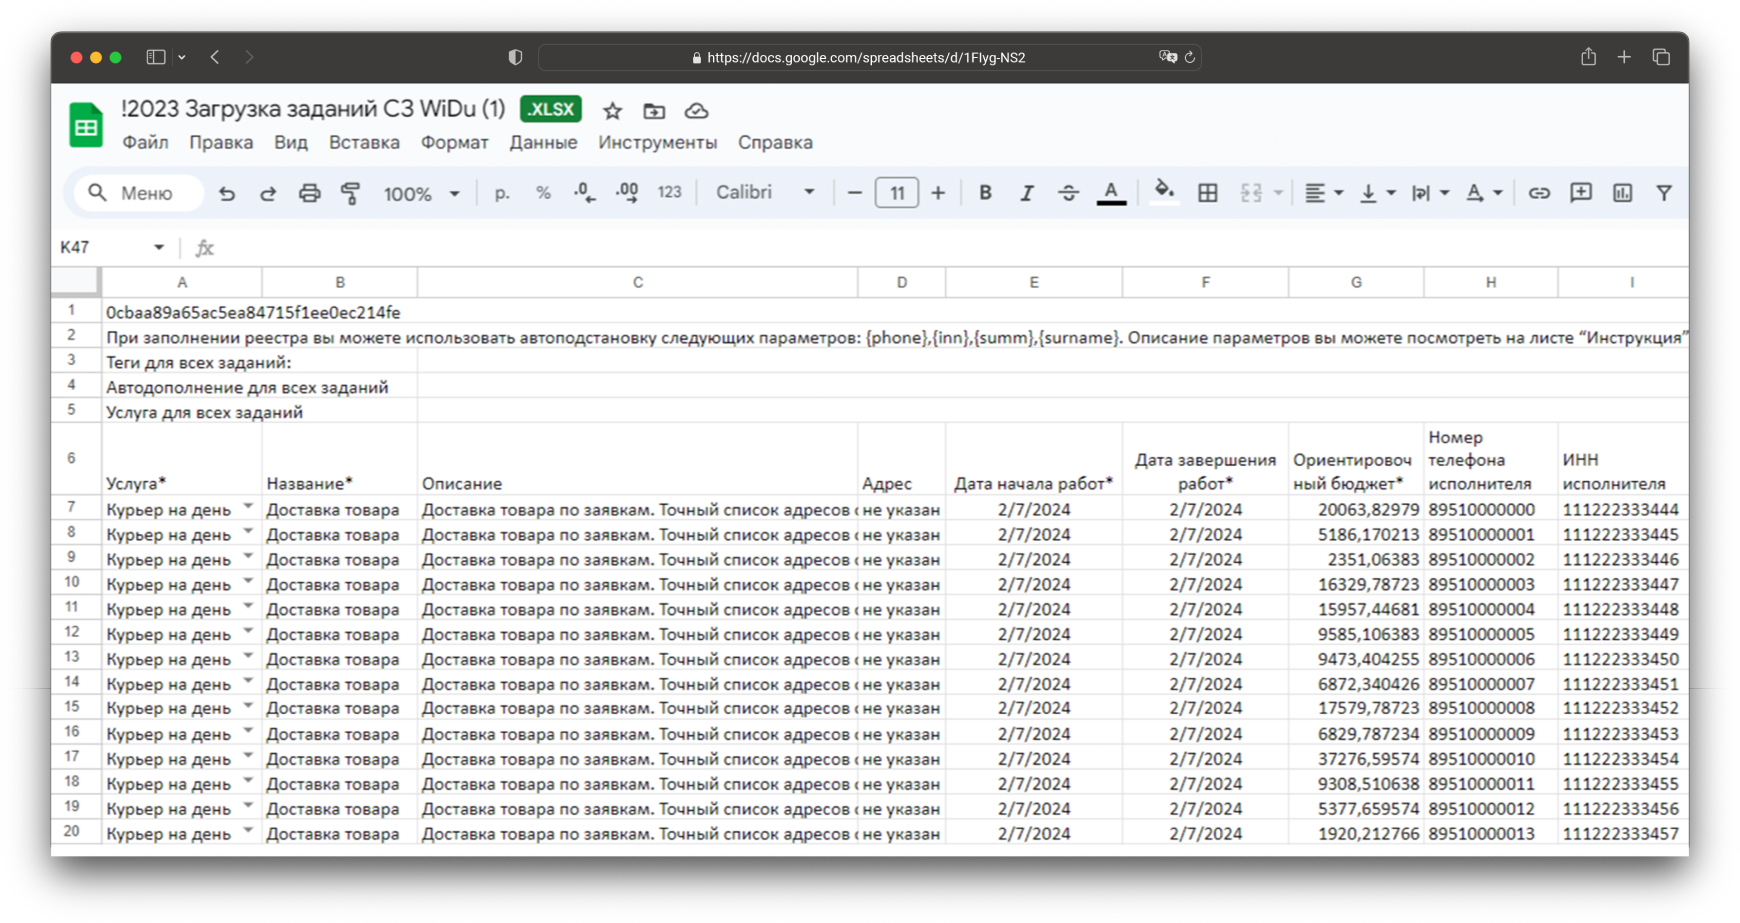 Реестр заданий в Excel